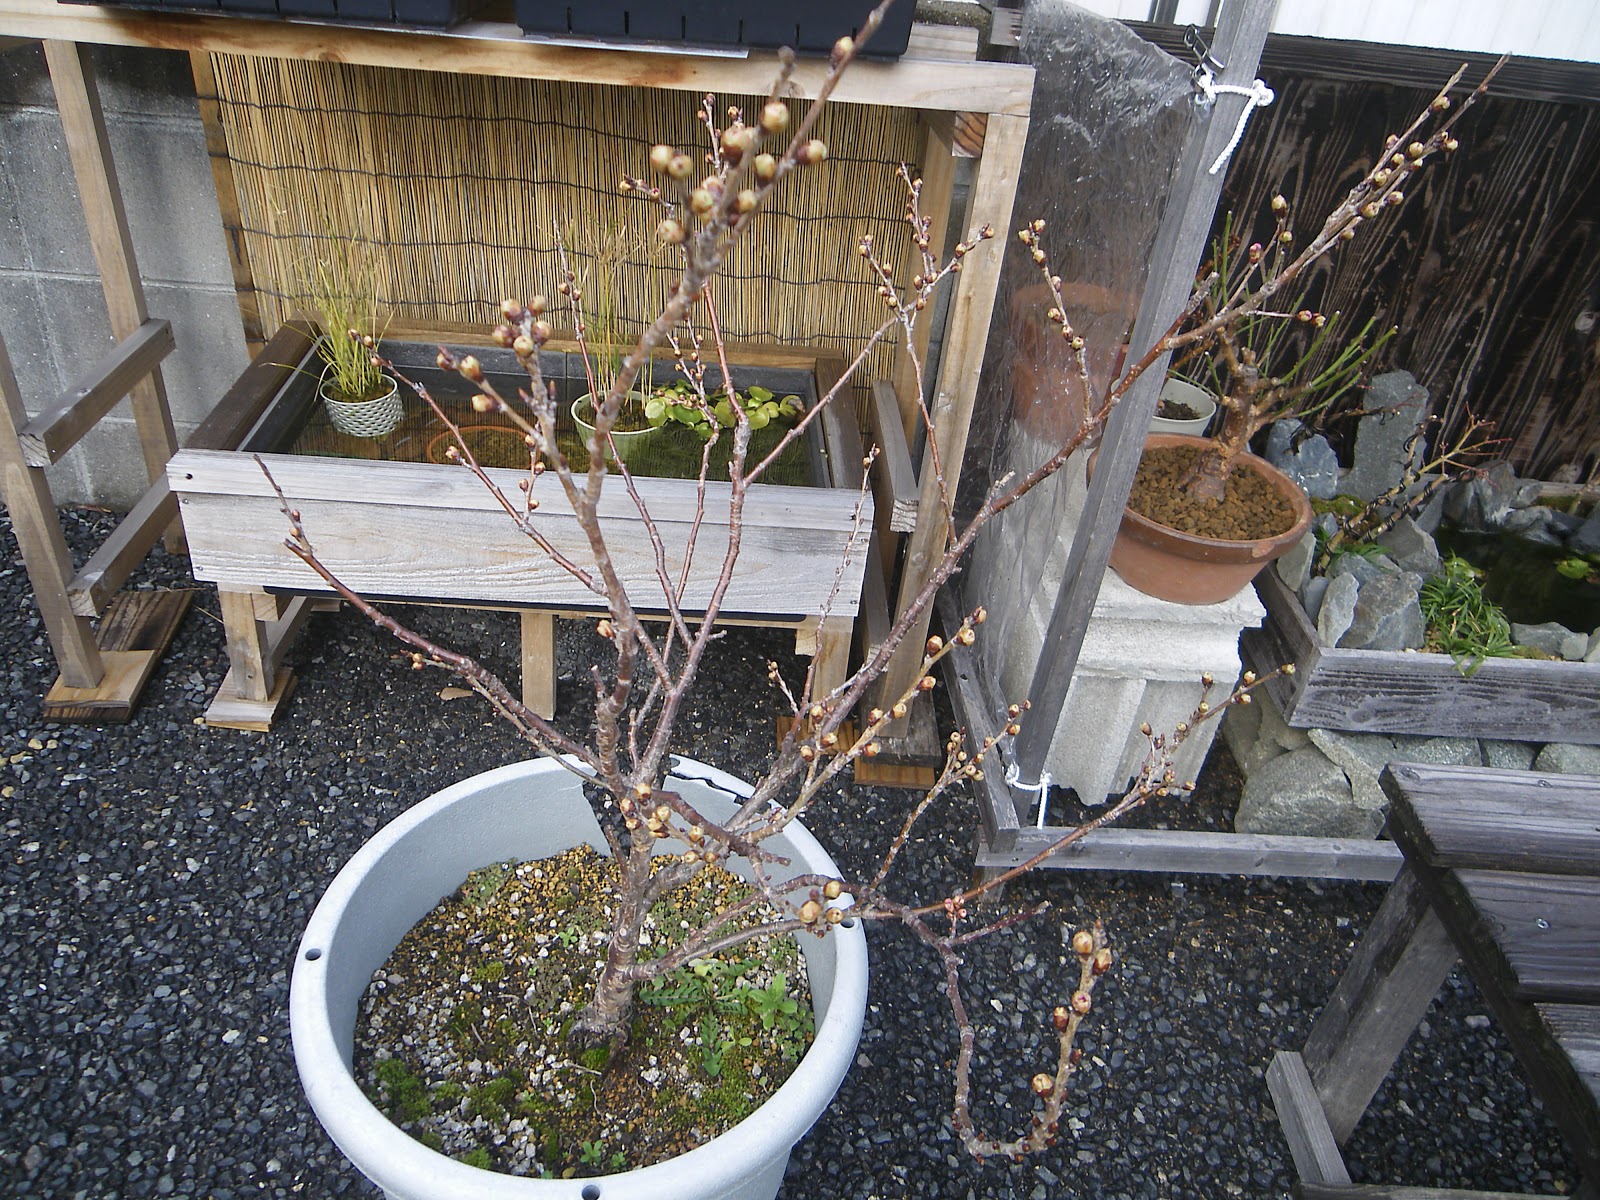 満開の桜を鉢植えで楽しむ、植え替えをして元気に育てる方法 |メダカの大工